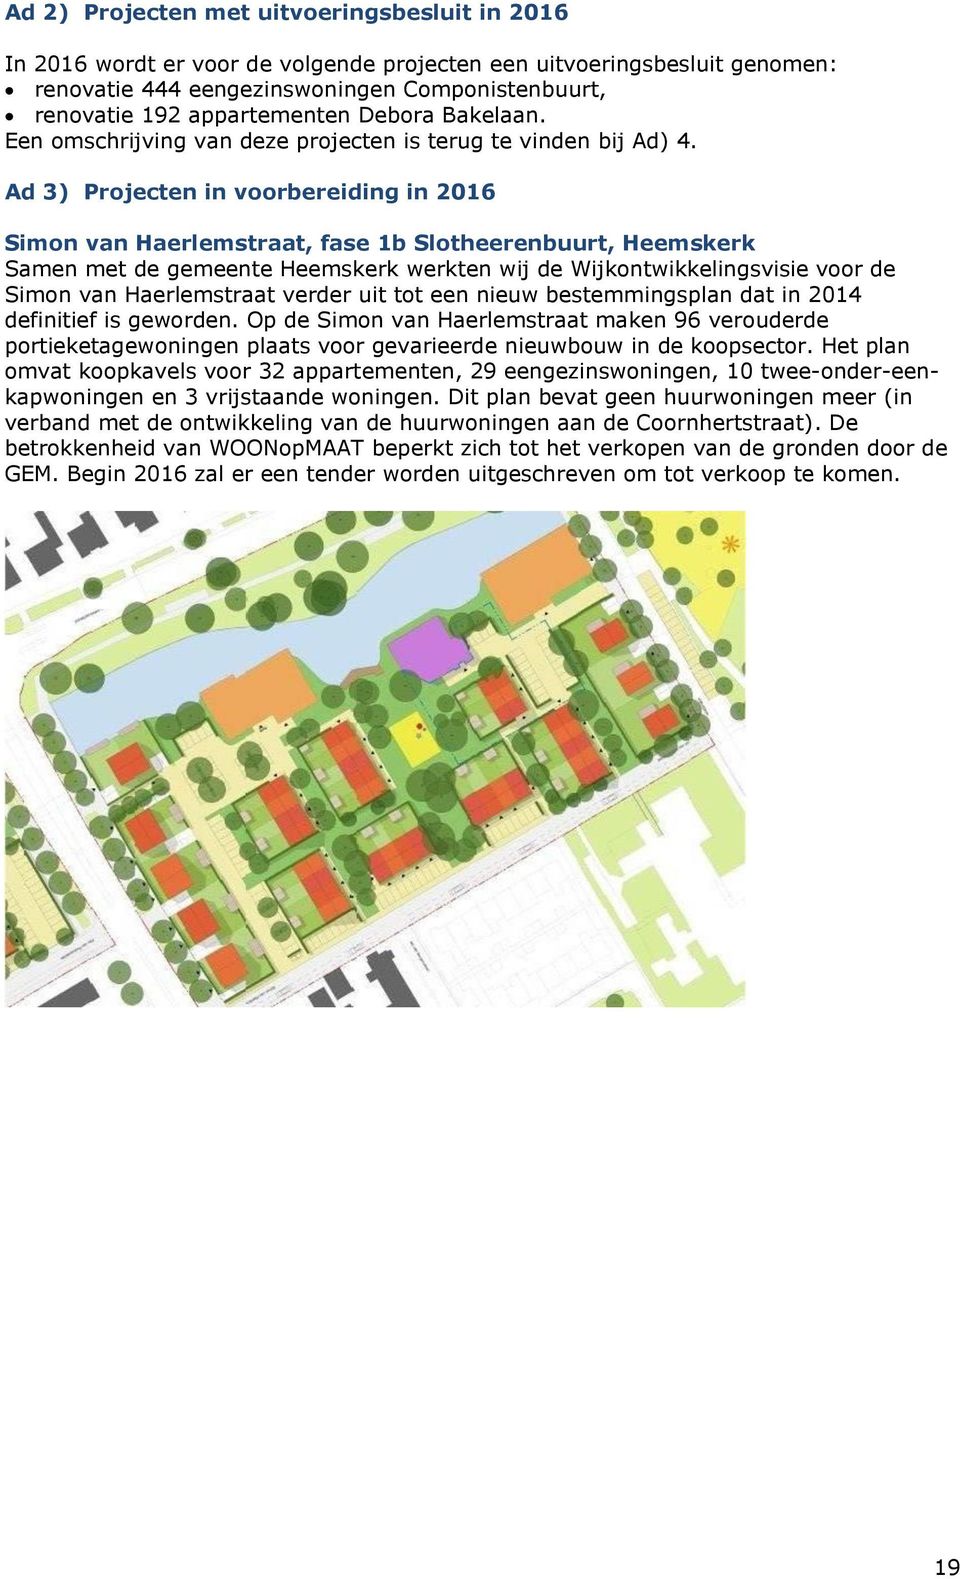 Ad 3) Projecten in voorbereiding in 2016 Simon van Haerlemstraat, fase 1b Slotheerenbuurt, Heemskerk Samen met de gemeente Heemskerk werkten wij de Wijkontwikkelingsvisie voor de Simon van